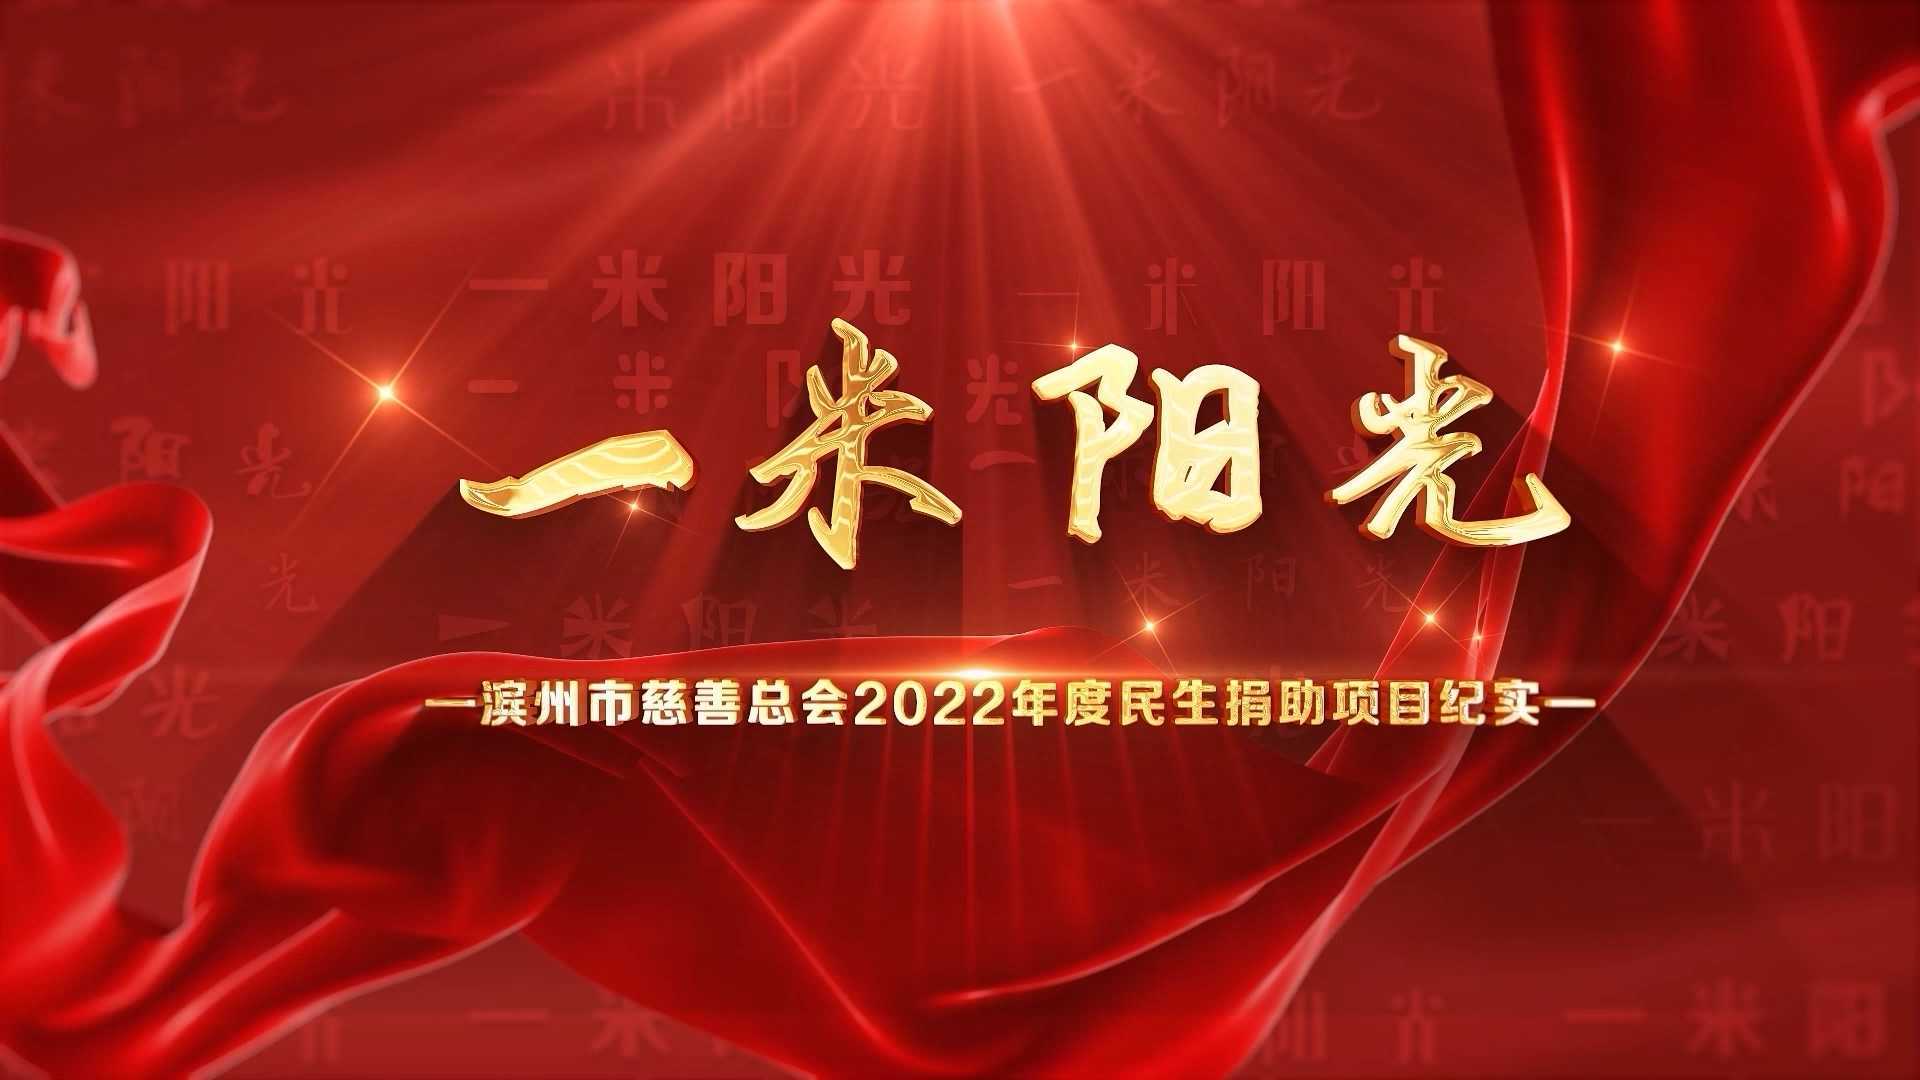 一 米 阳 光 —滨州市慈善总会2022年度民生捐助项目纪实 0301